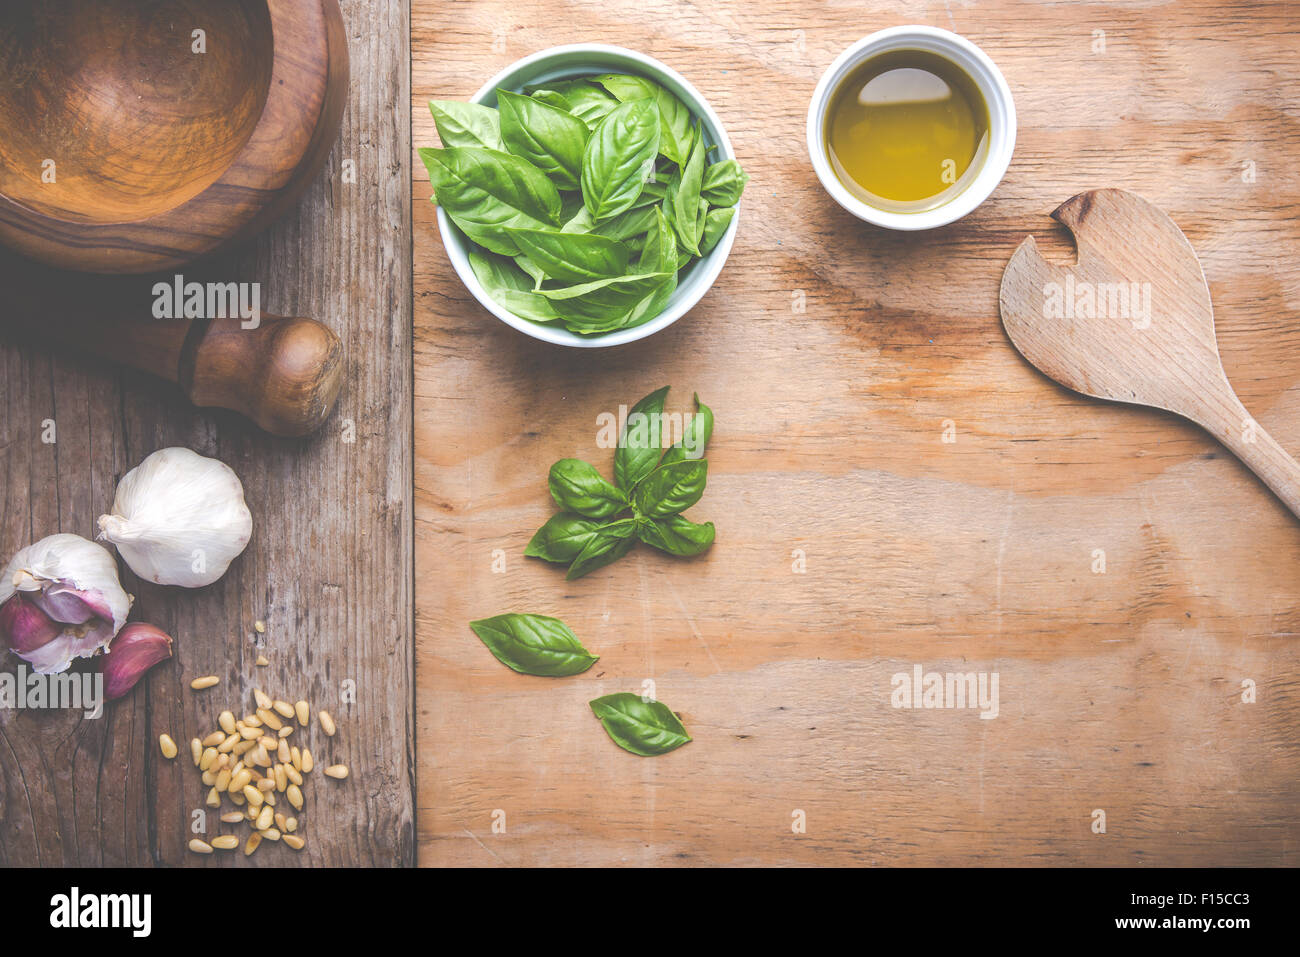 Machen Nudeln mit Pesto mit dem ursprünglichen Rezept von Genua. Hölzernen Hintergrund und Zubehör vermitteln das Gefühl von Italien. Stockfoto